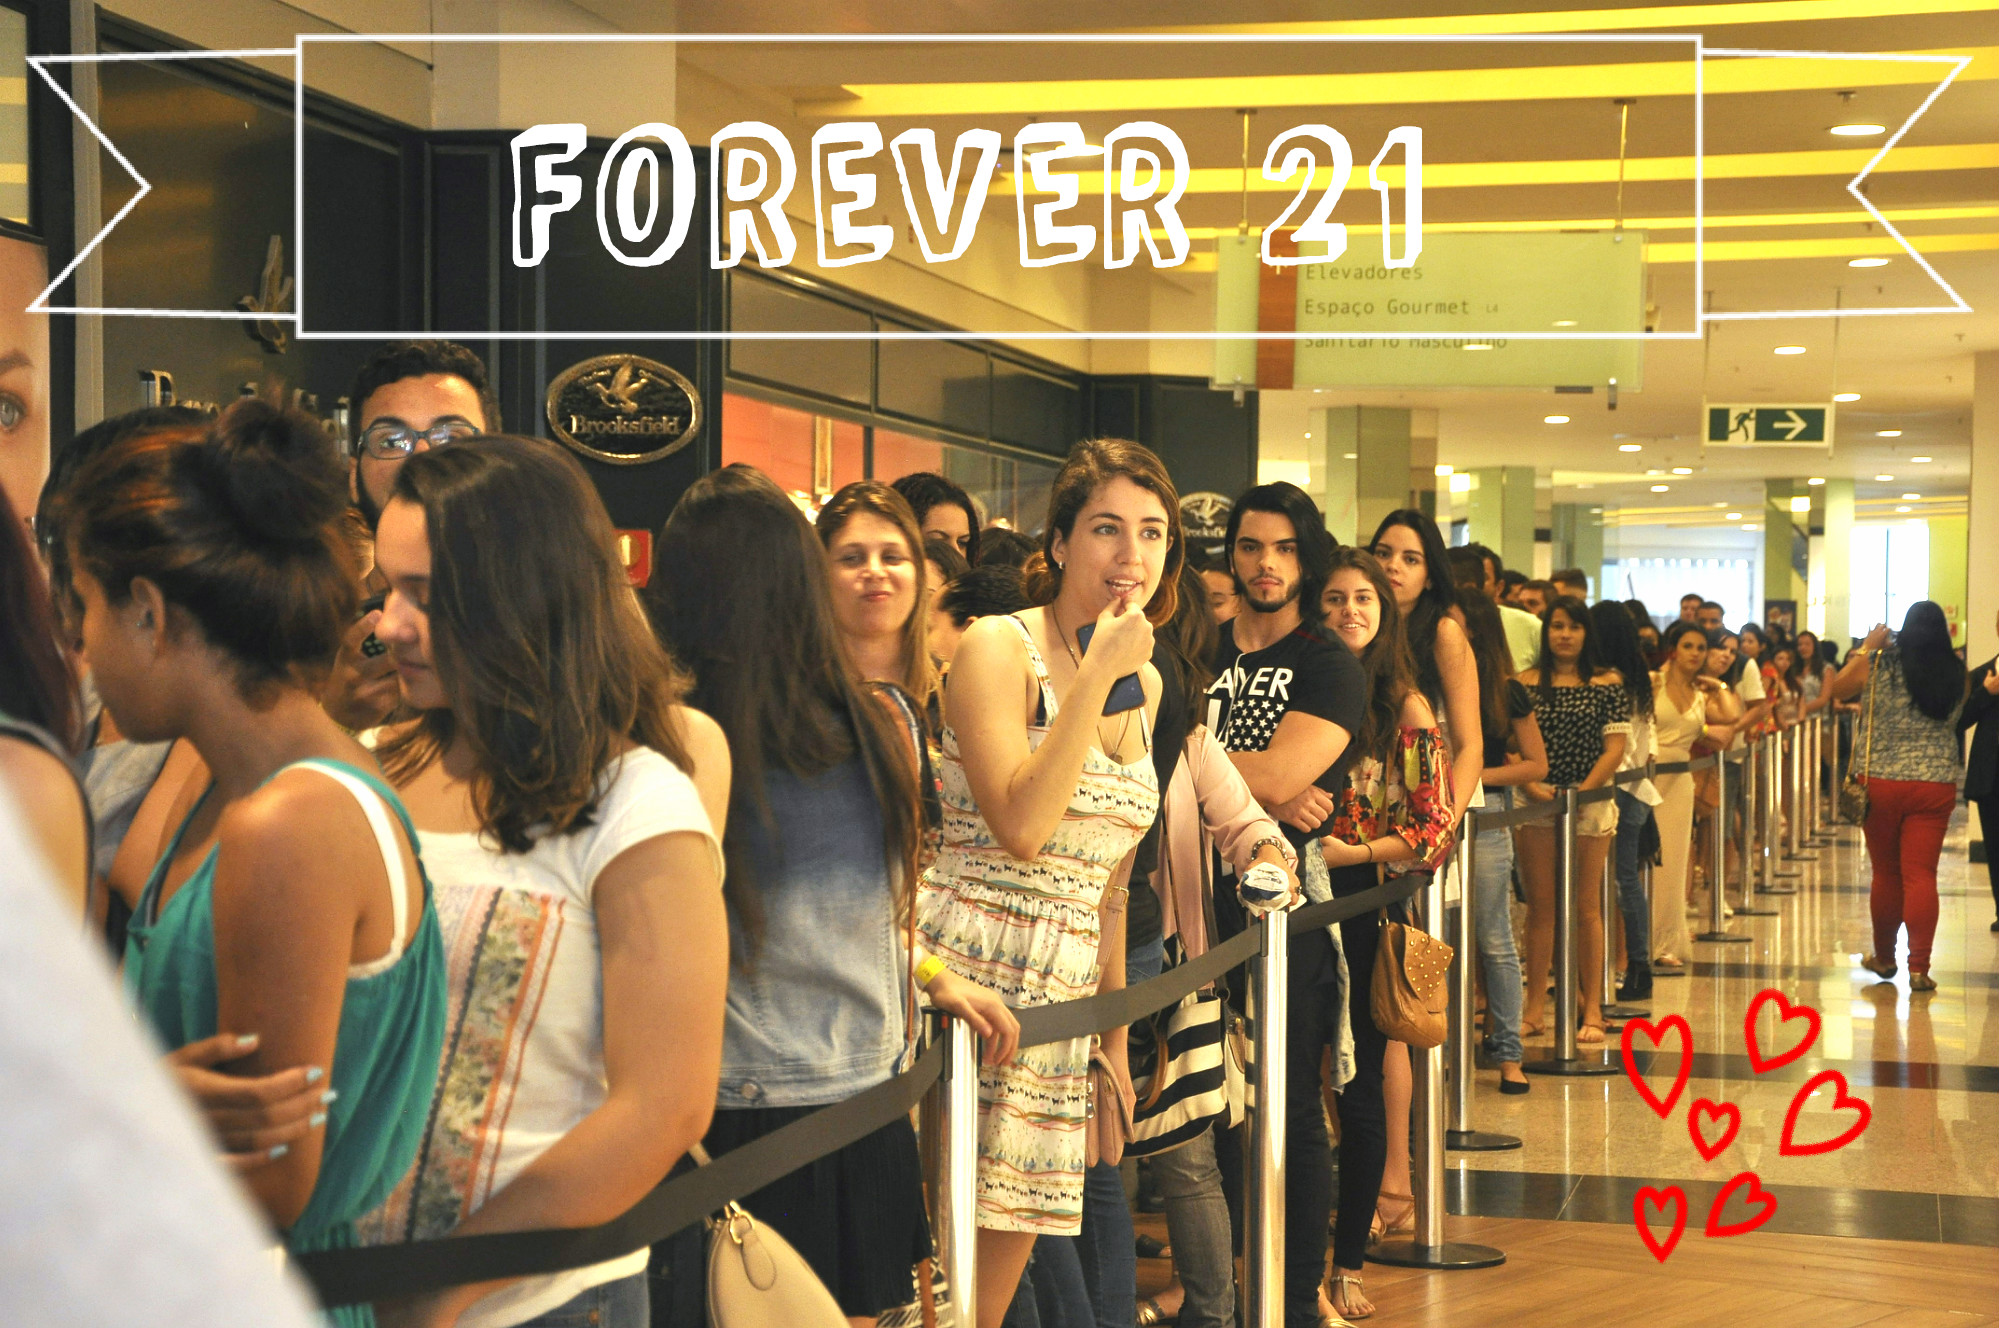 A pré-inauguração da Forever 21 no Brasil